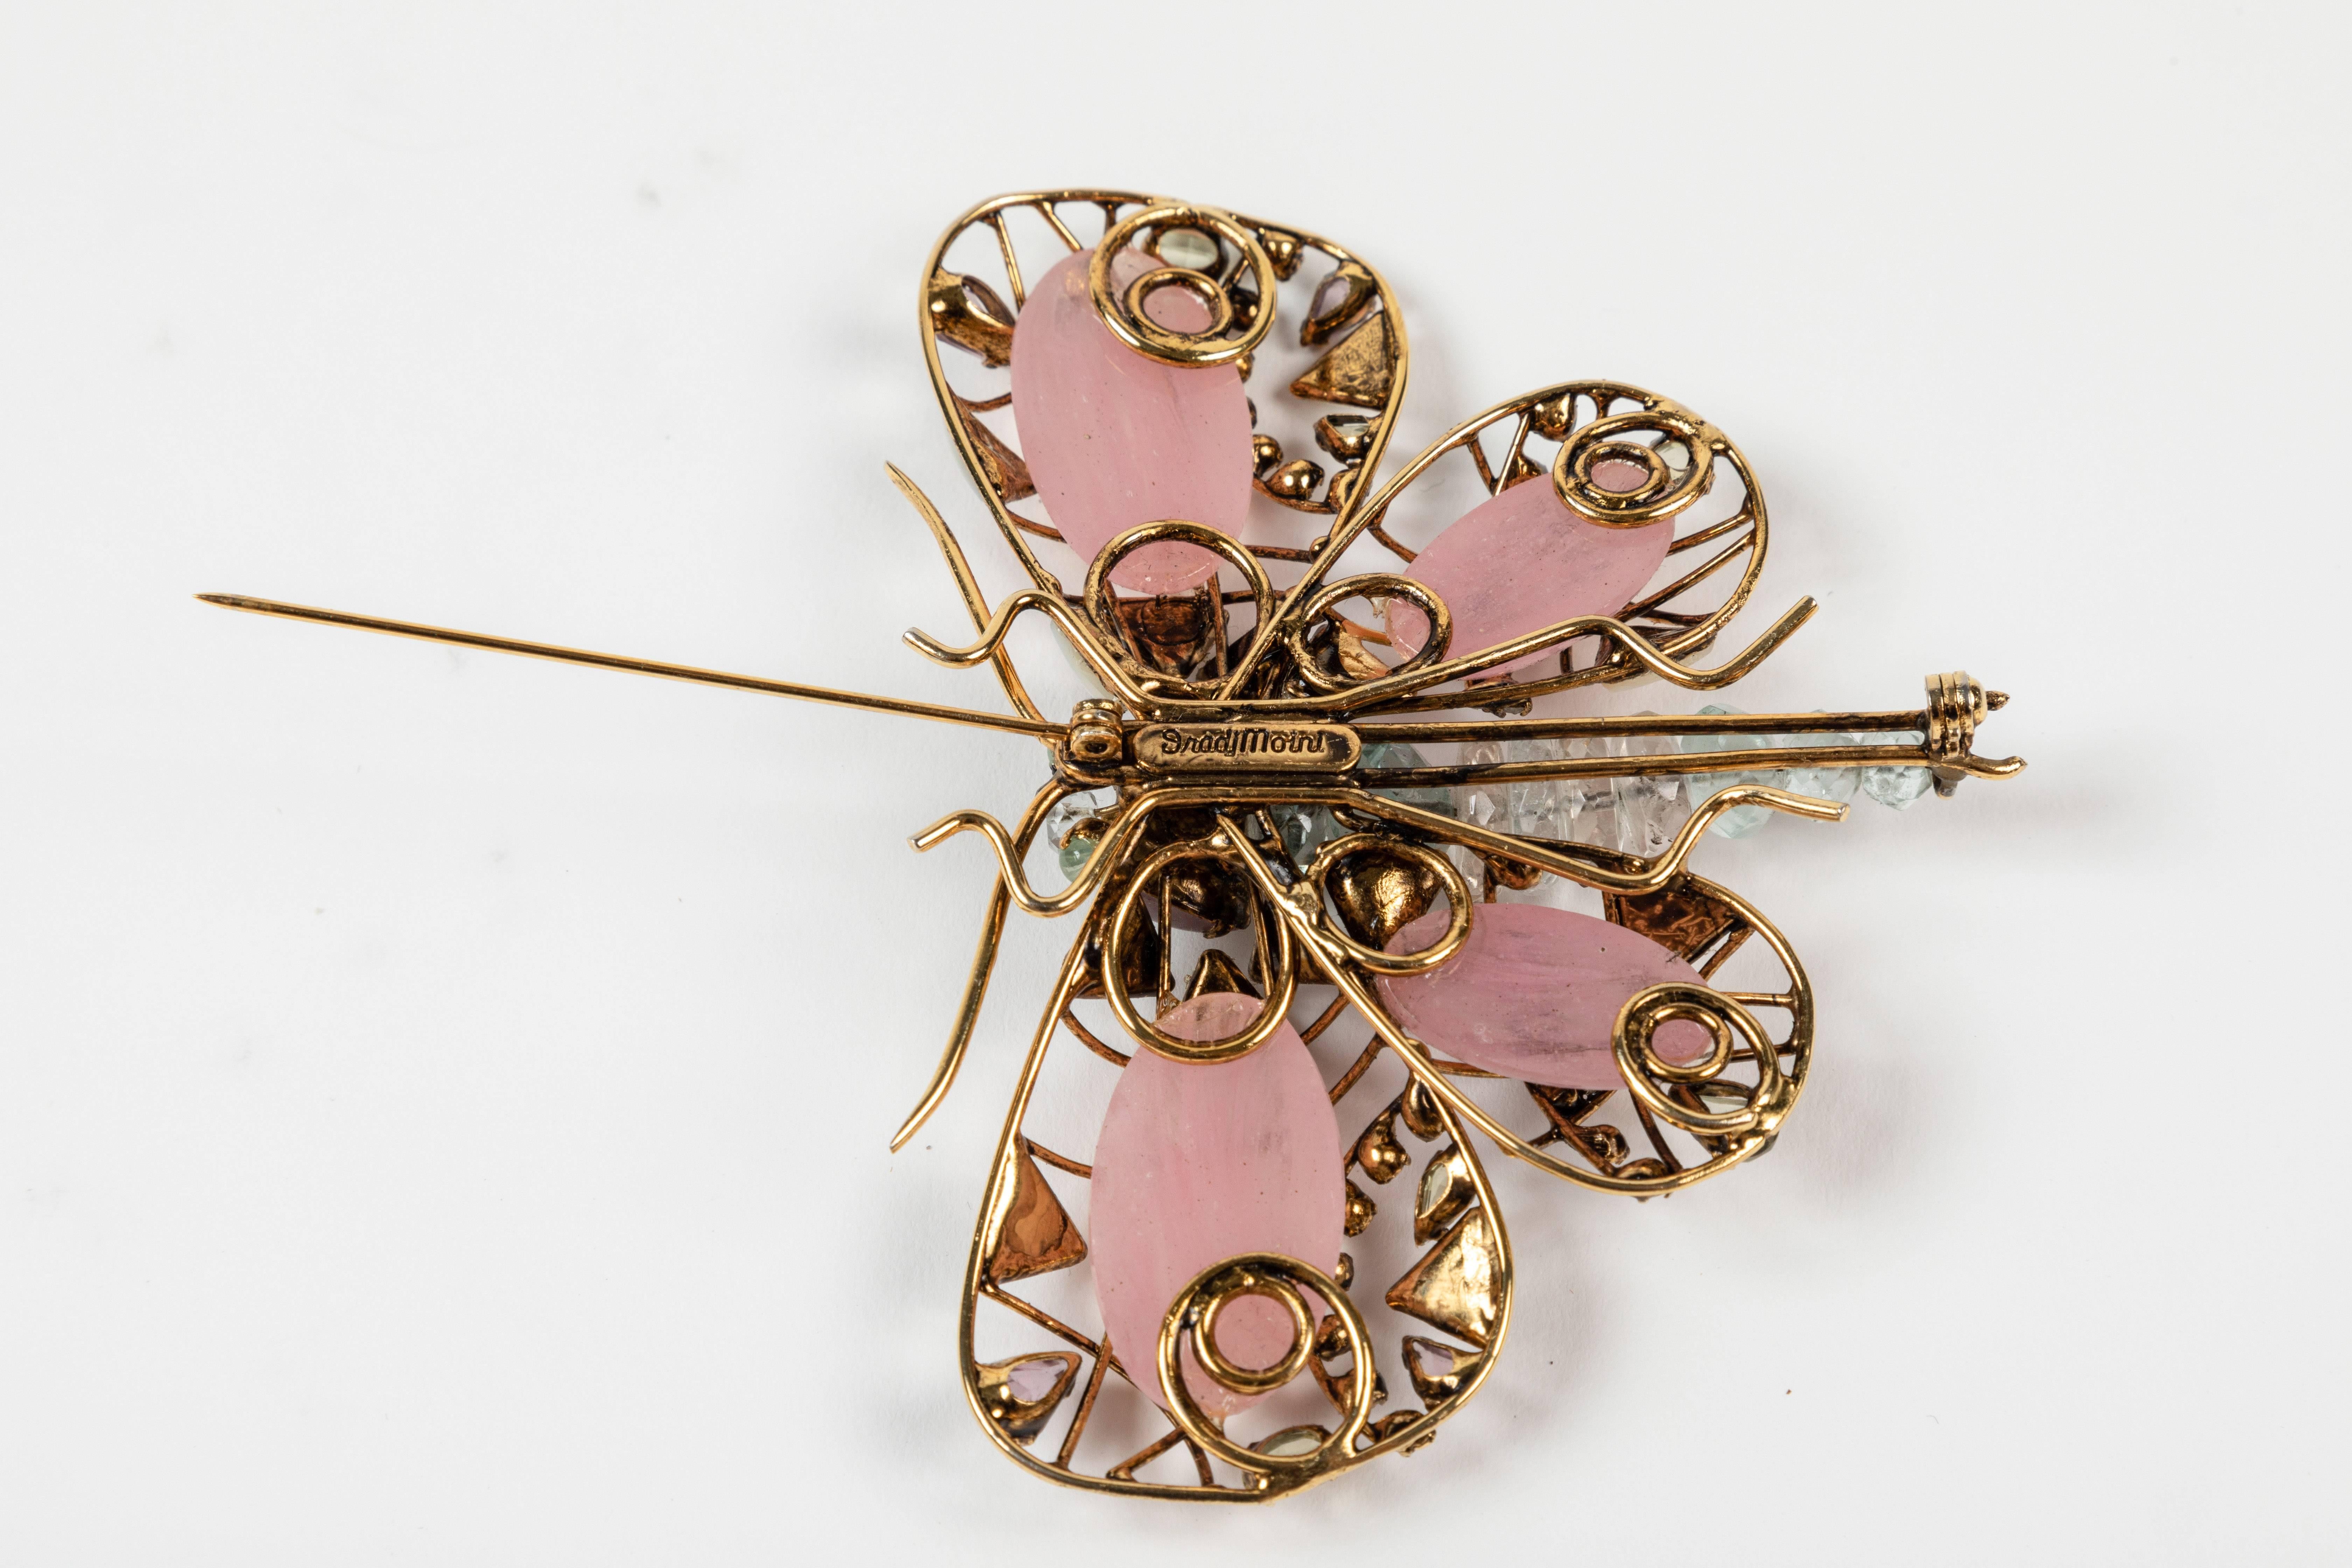 Multi Stone Butterfly Brooch by Iradj Moini 1